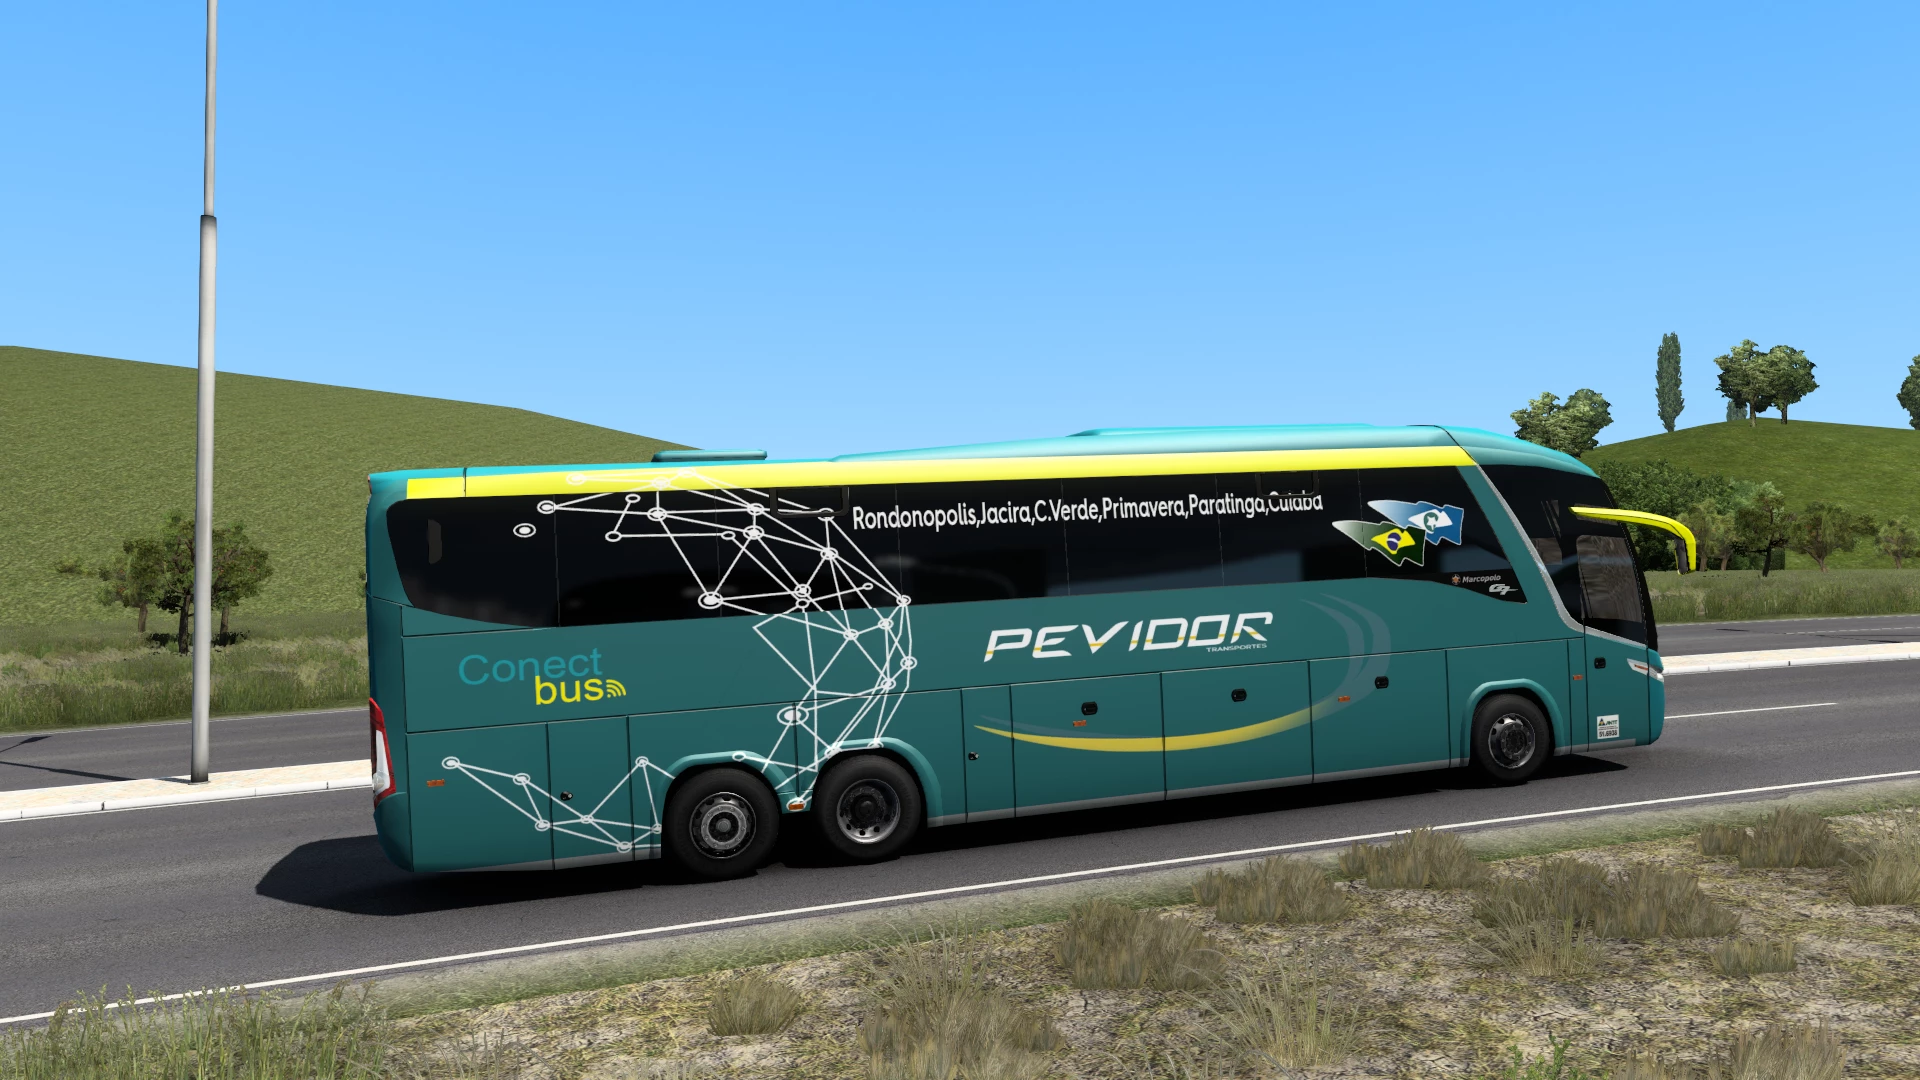 Euro Truck Simulator Mod Bus Caminhões Brasileiros